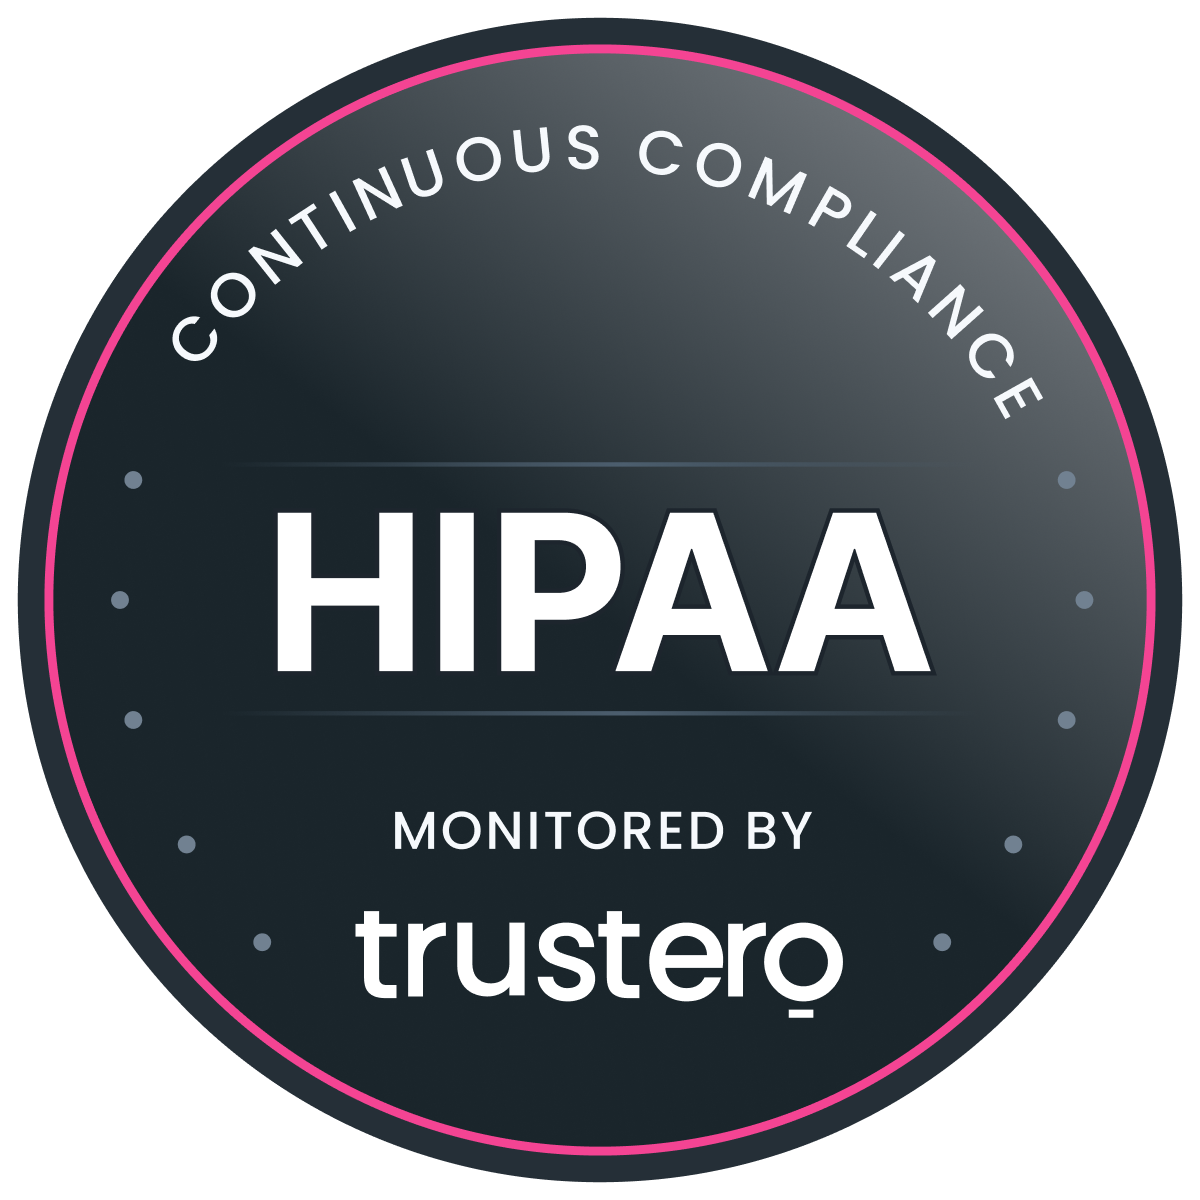 Trustero HIPAA badge 1200w